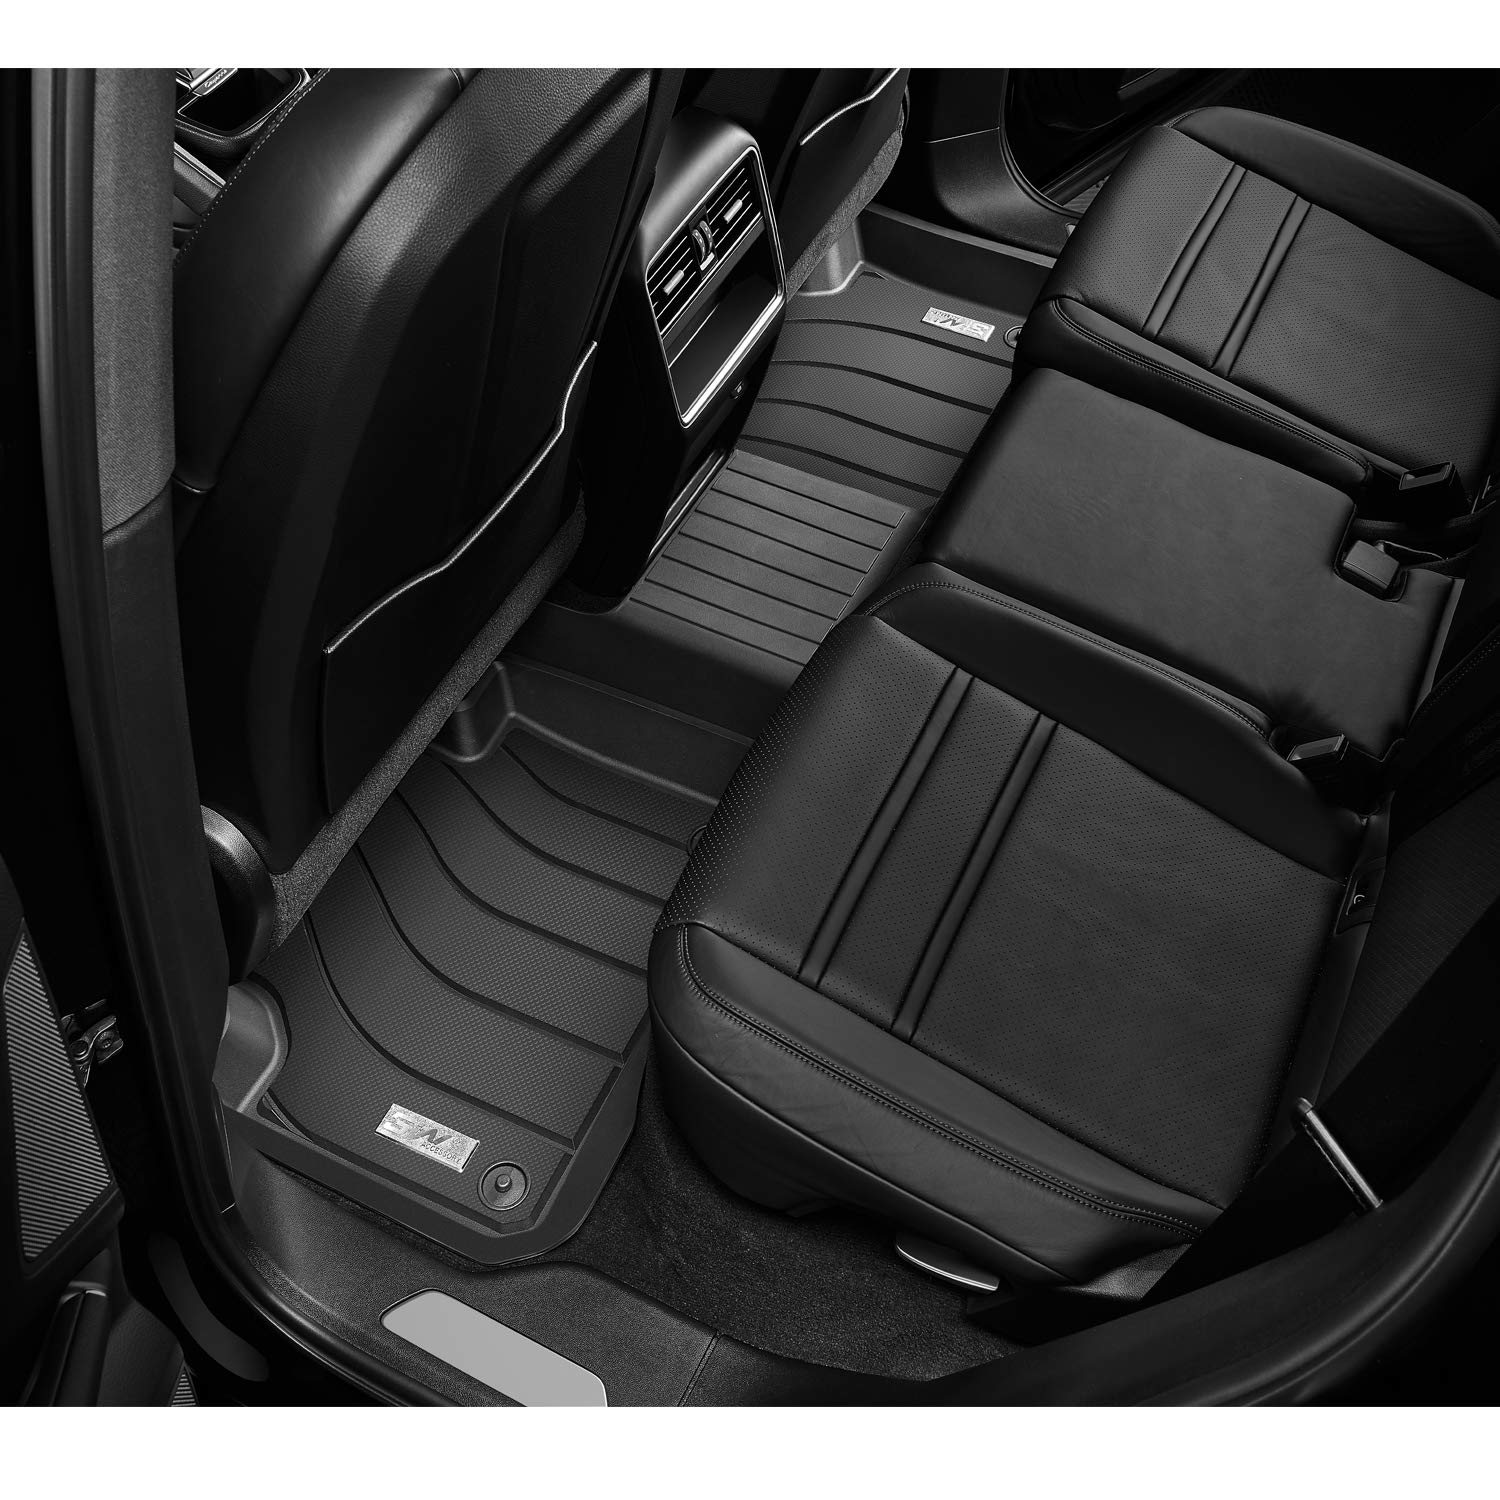 Thảm lót sàn xe ô tô  Volkswagen New Touareg 2018- Nhãn hiệu Macsim 3W chất liệu nhựa TPE đúc khuôn cao cấp - màu đen